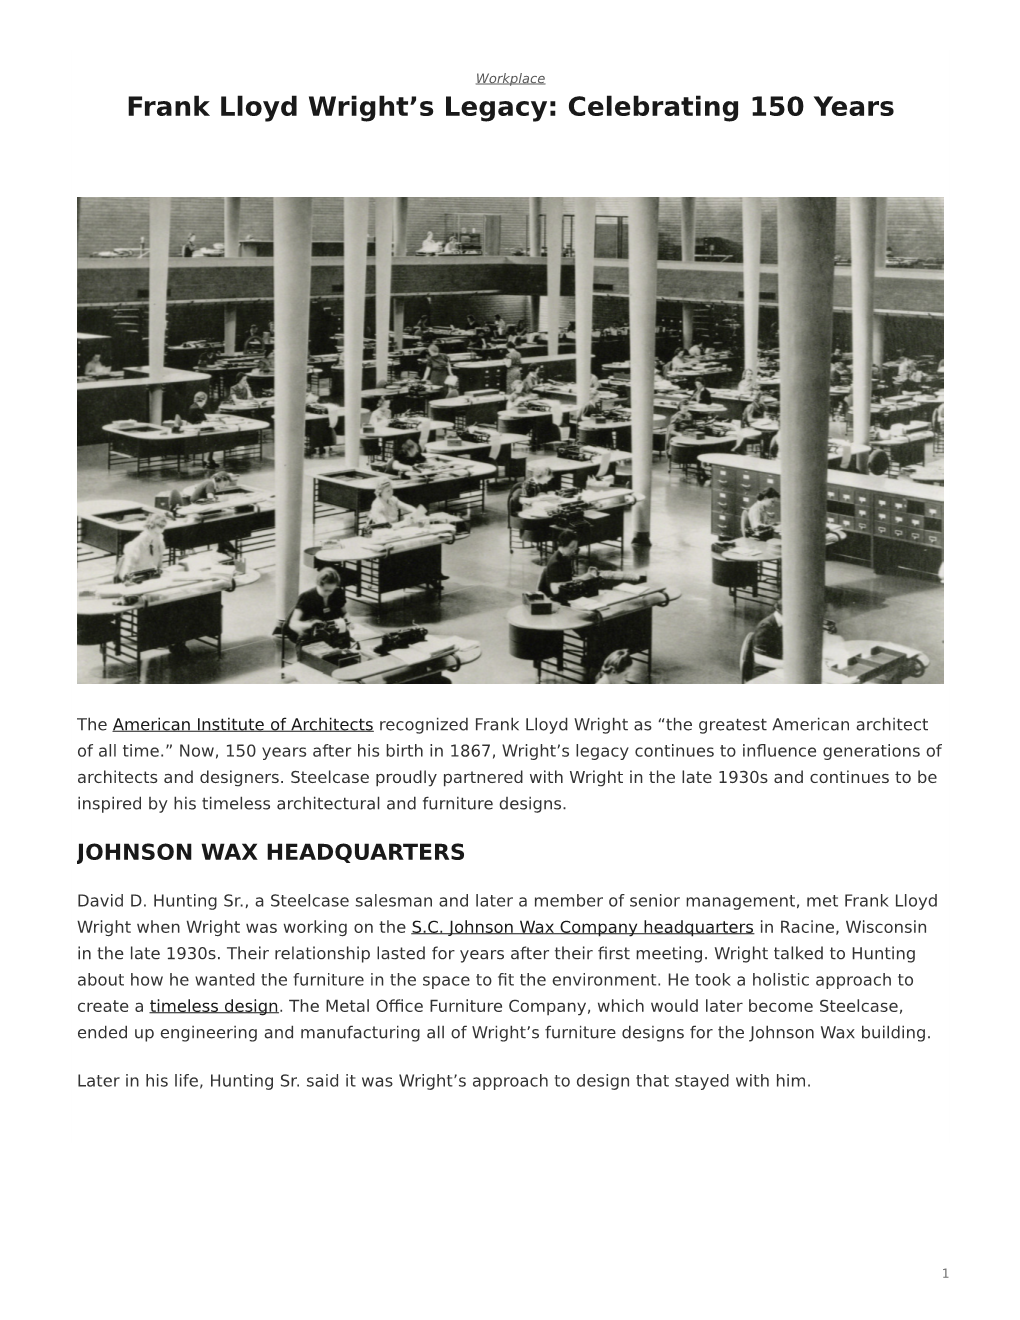 Frank Lloyd Wright's Legacy